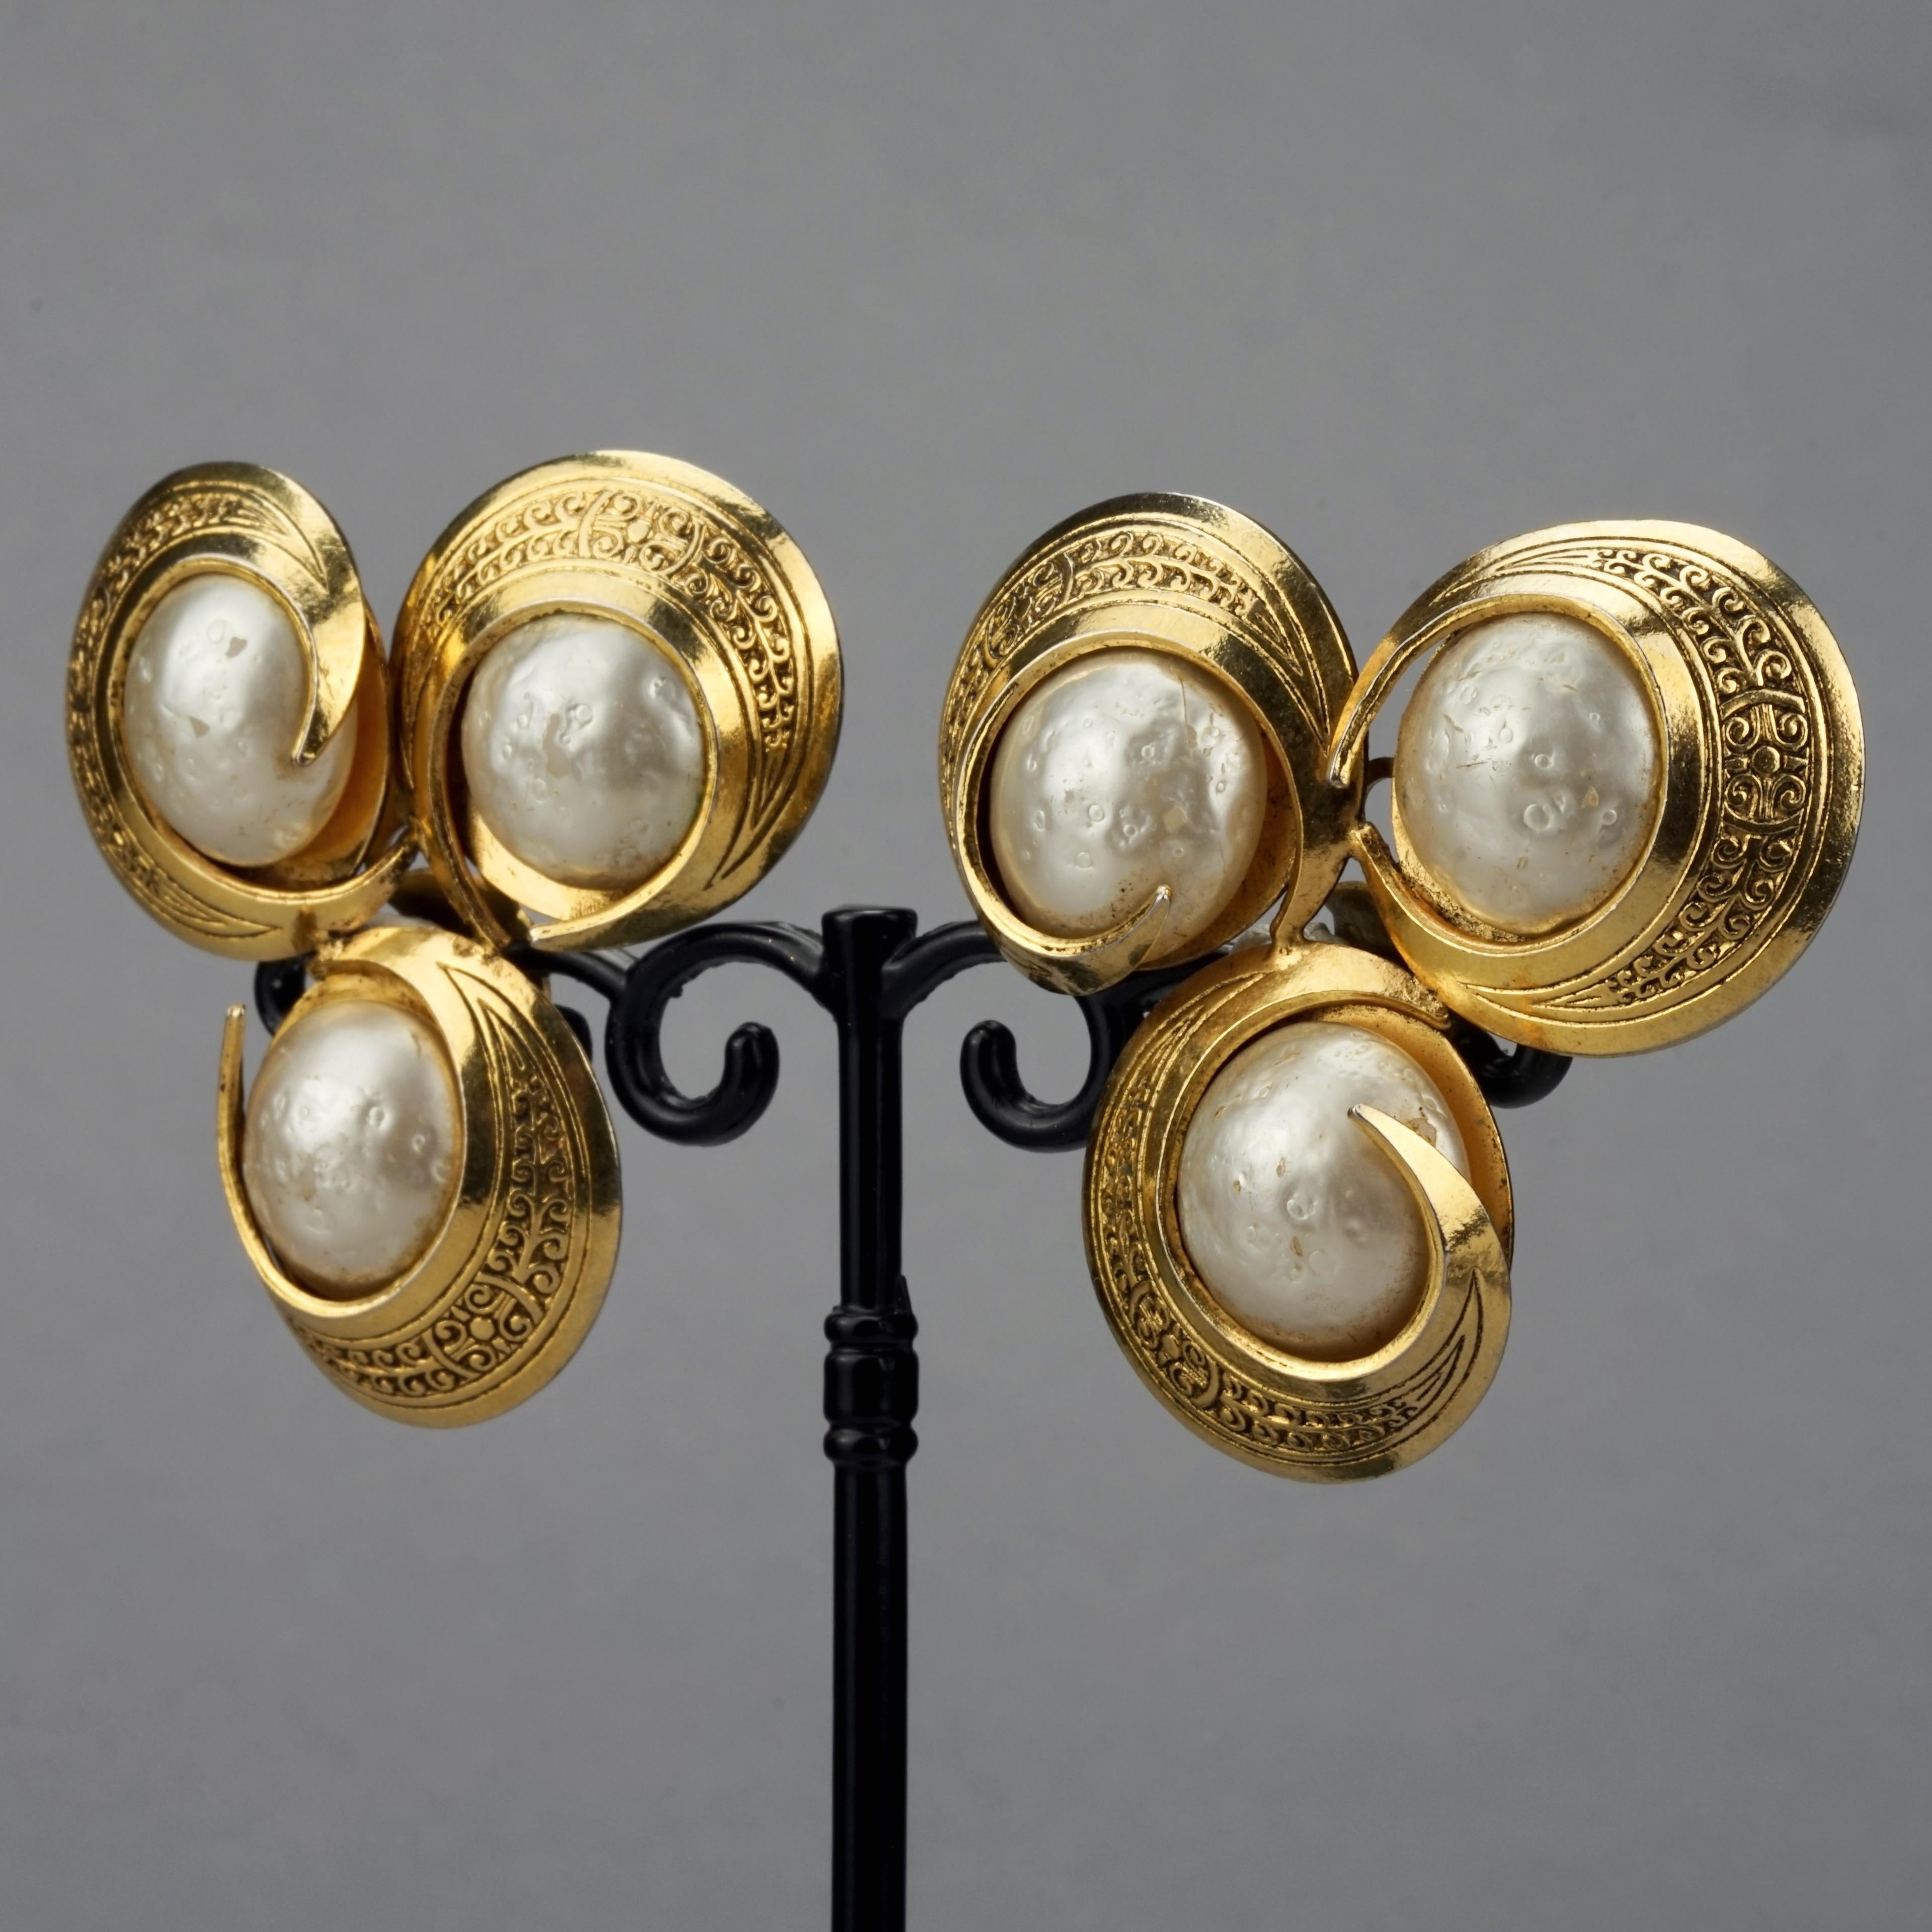 mercedes robirosa earrings